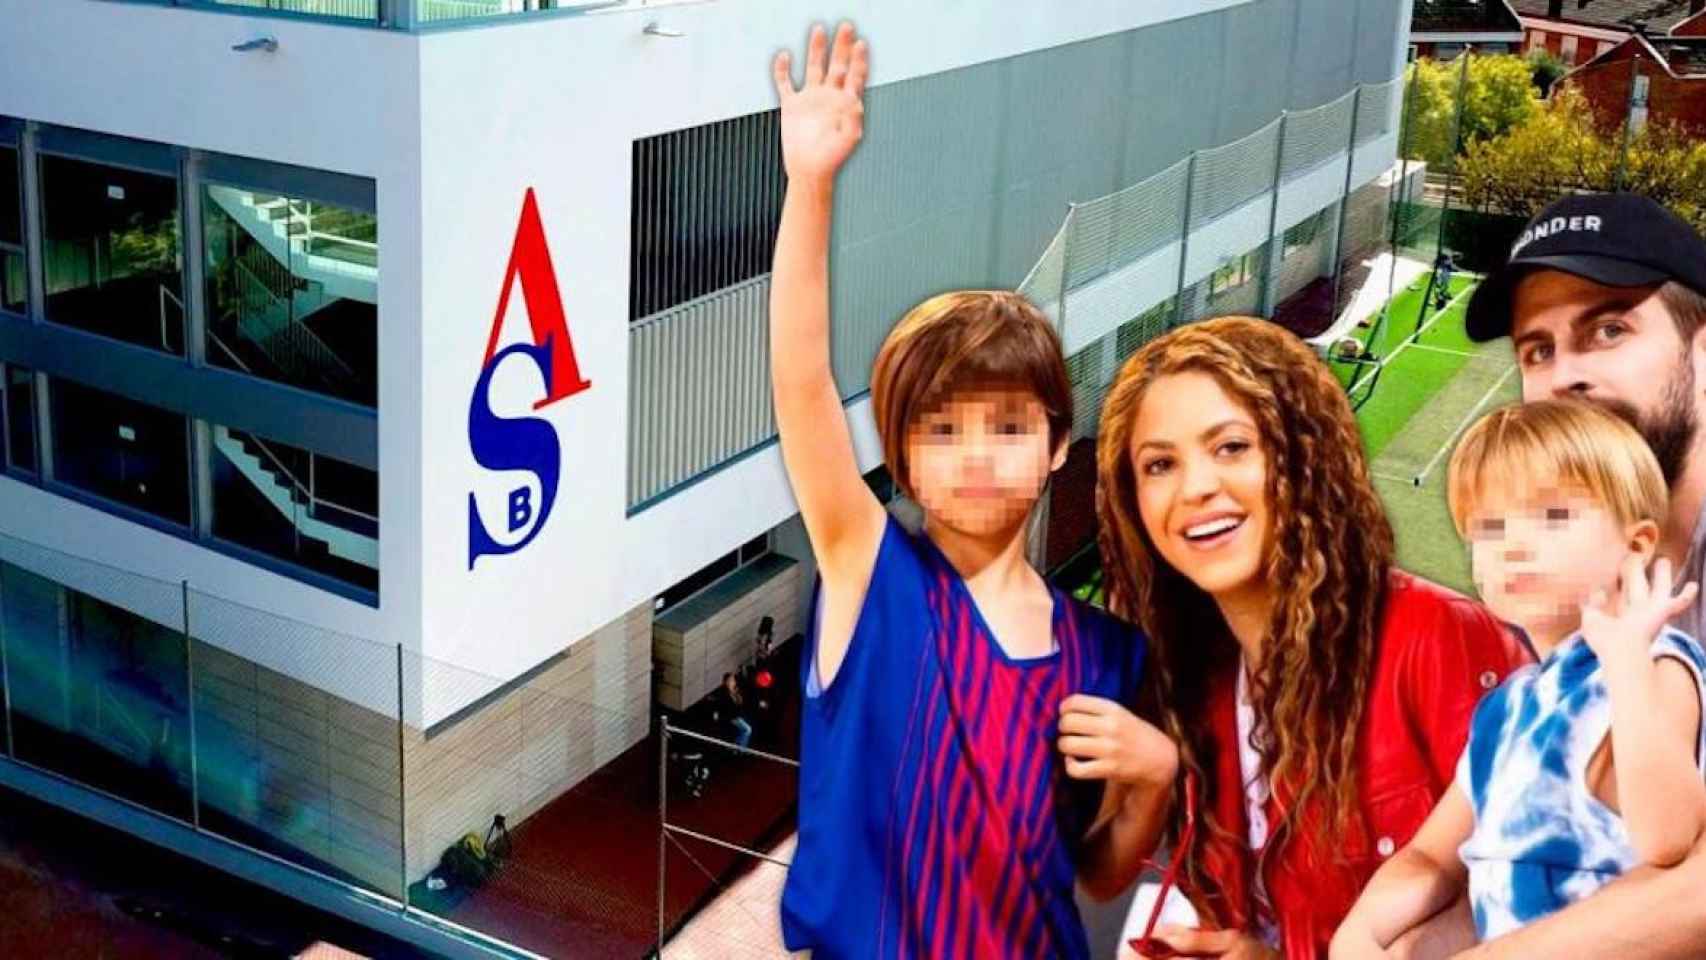 El American School of Barcelona (ABS) junto a Shakira y Gerard Piqué con sus hijos, Sasha y Milan / CG